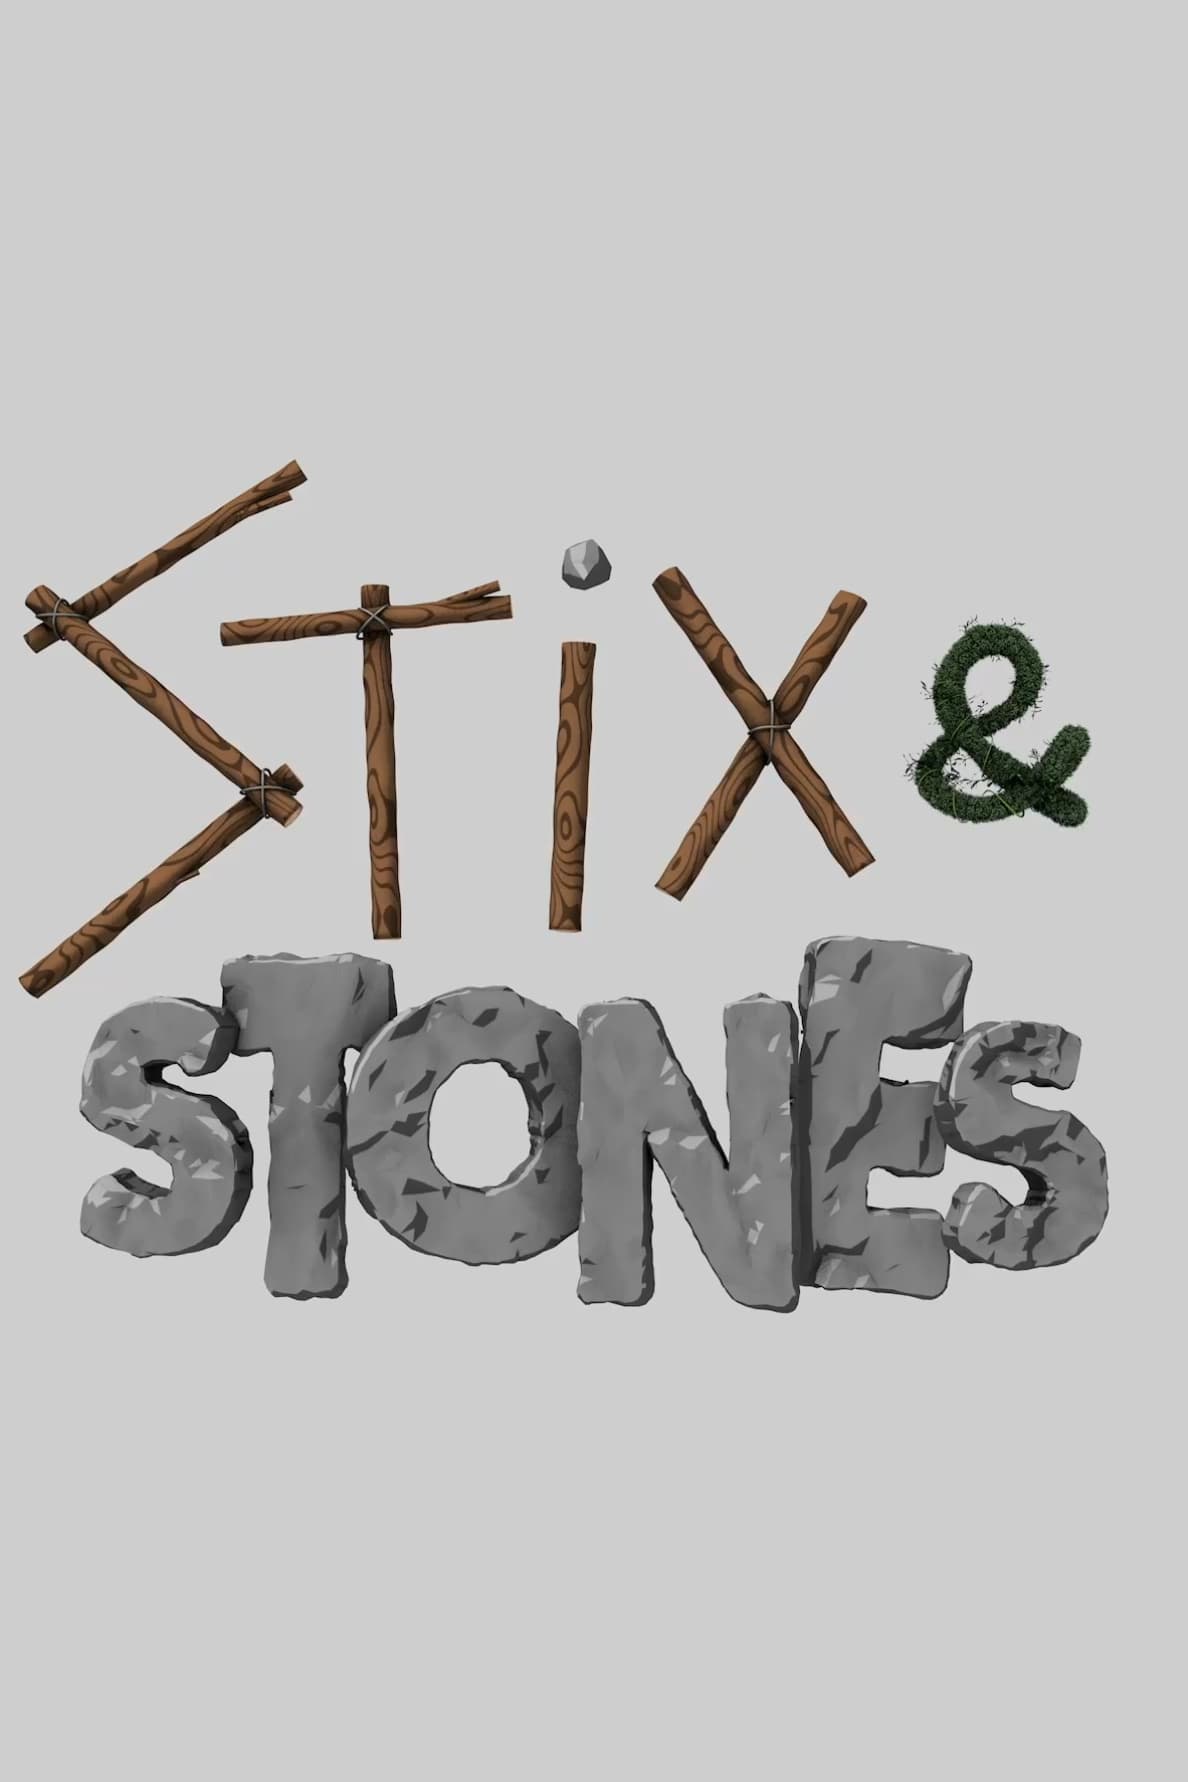 Stix and Stones